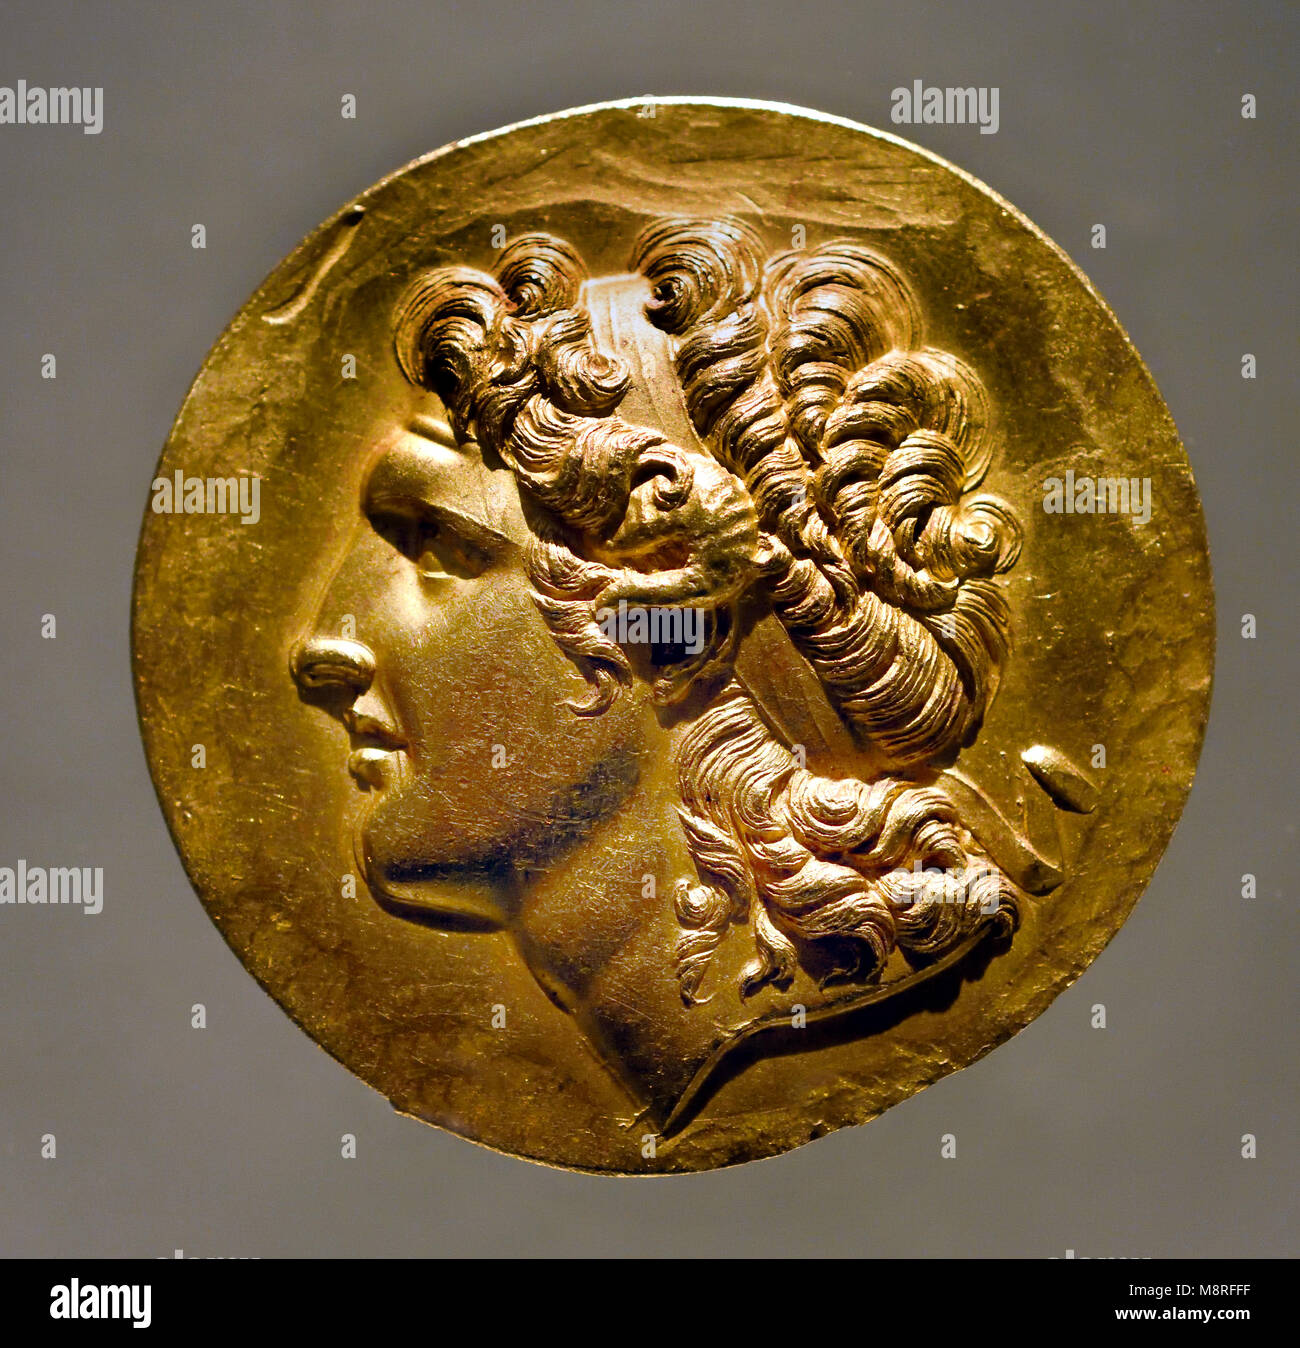 Alexander der Große war eine antike König von Makedonien (356-323 v. Chr.). Griechisch, Griechenland Stockfoto